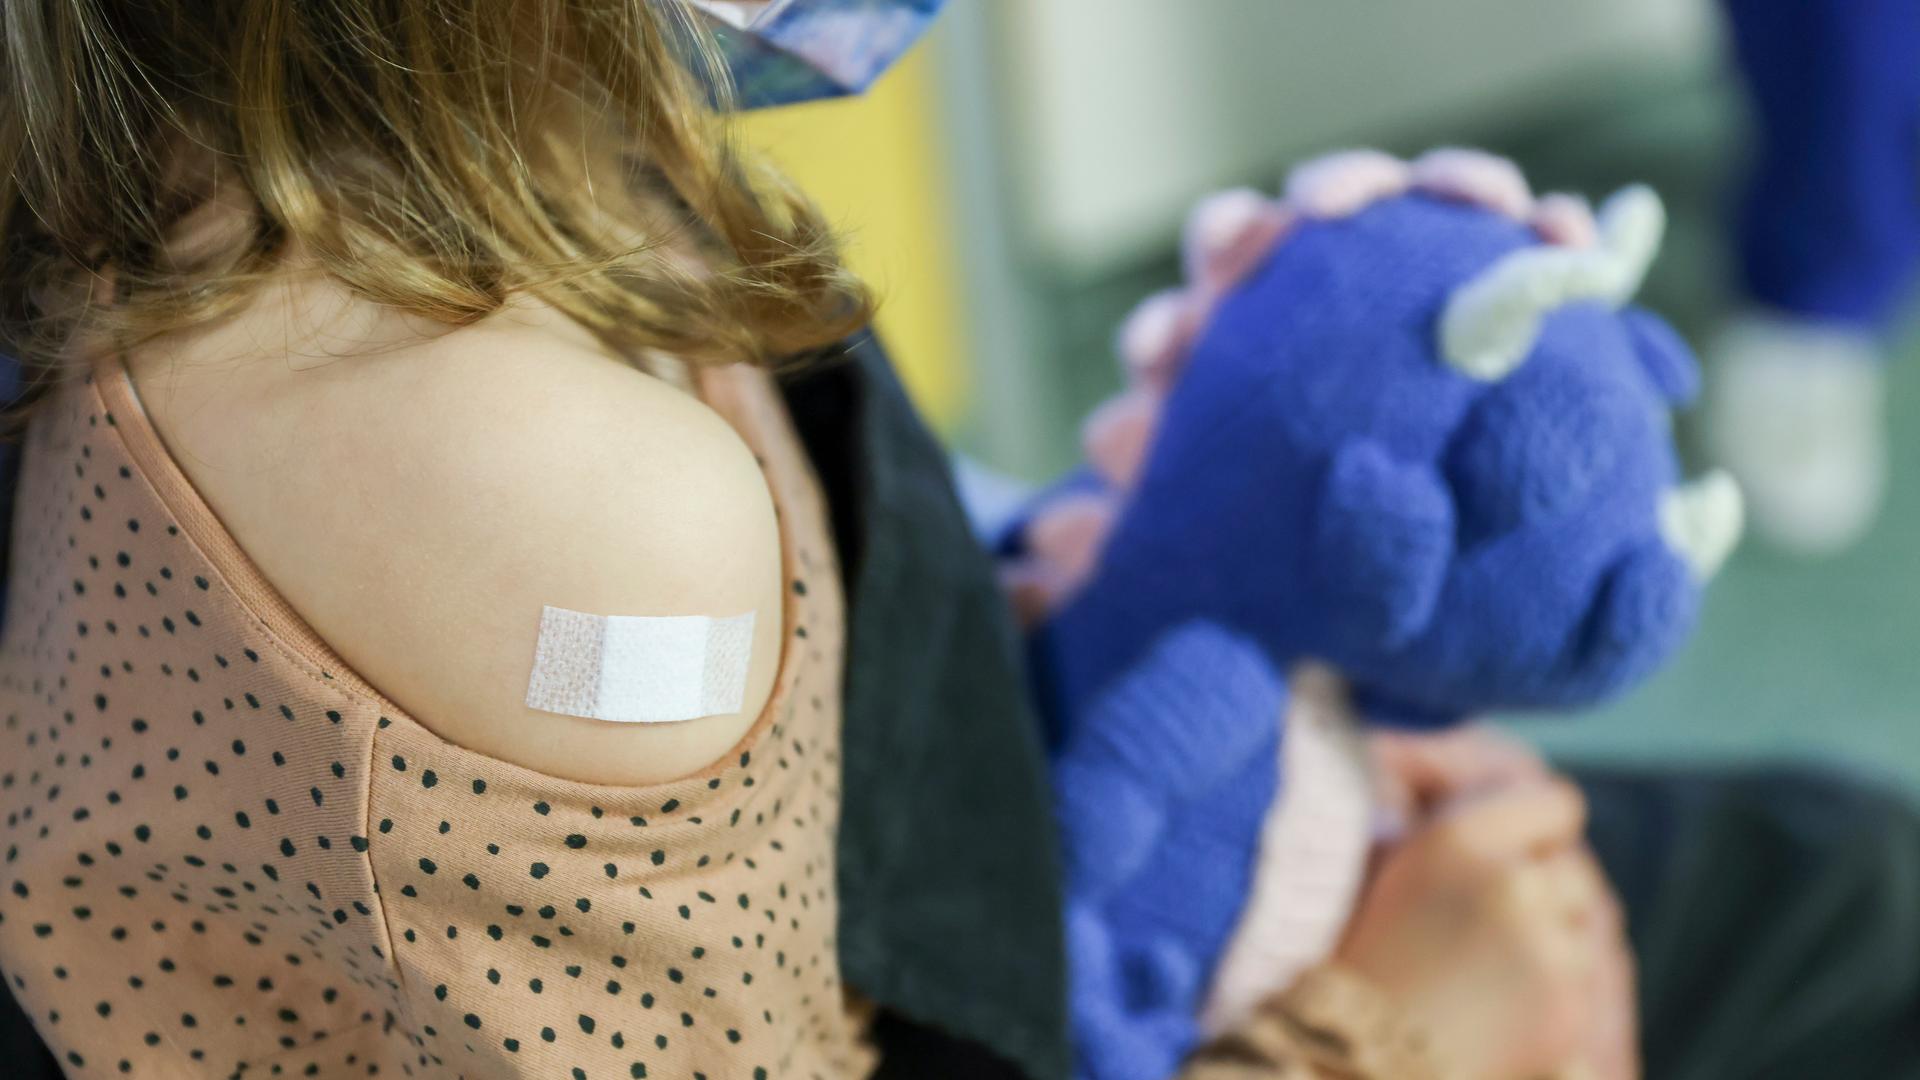 Ein Pflaster klebt auf den Arm eines Mädchens, das gegen  Covid-19 geimpft wurde. Das Kind hält einen blauen Stoffdrachen im Arm.